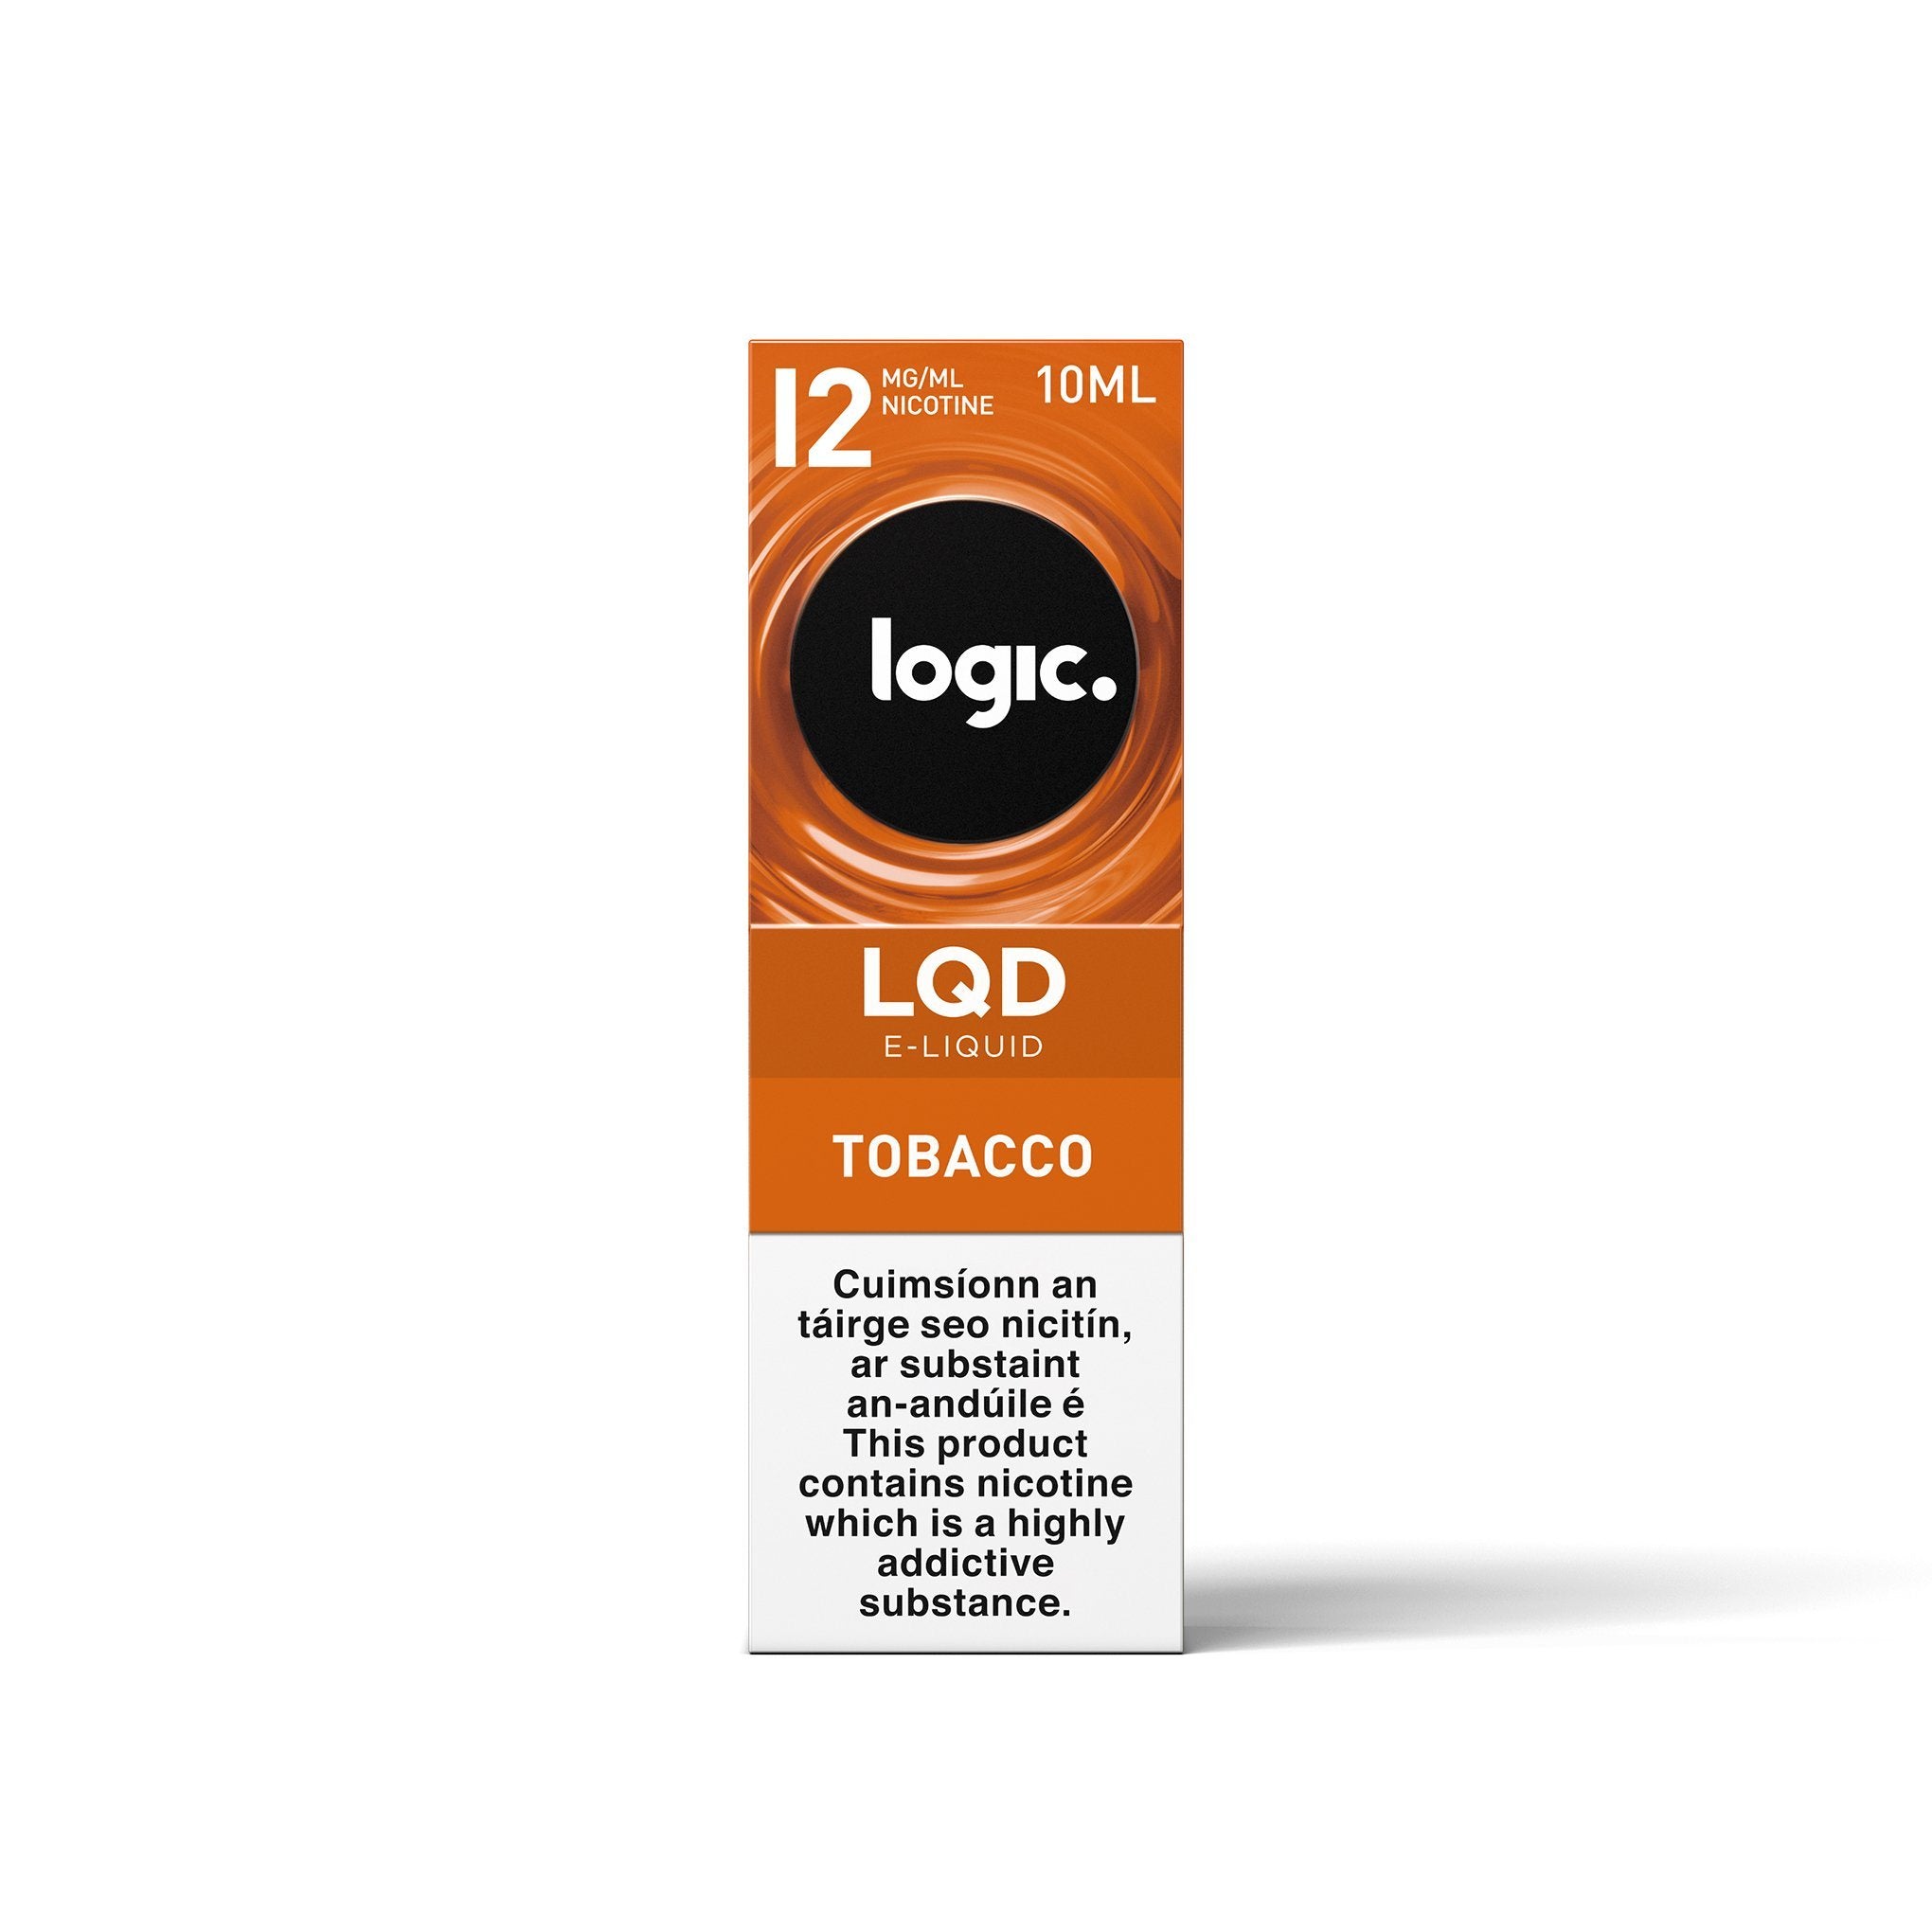 Logic LQD E-Liquid Tobacco 12MG - Medium Nicotine